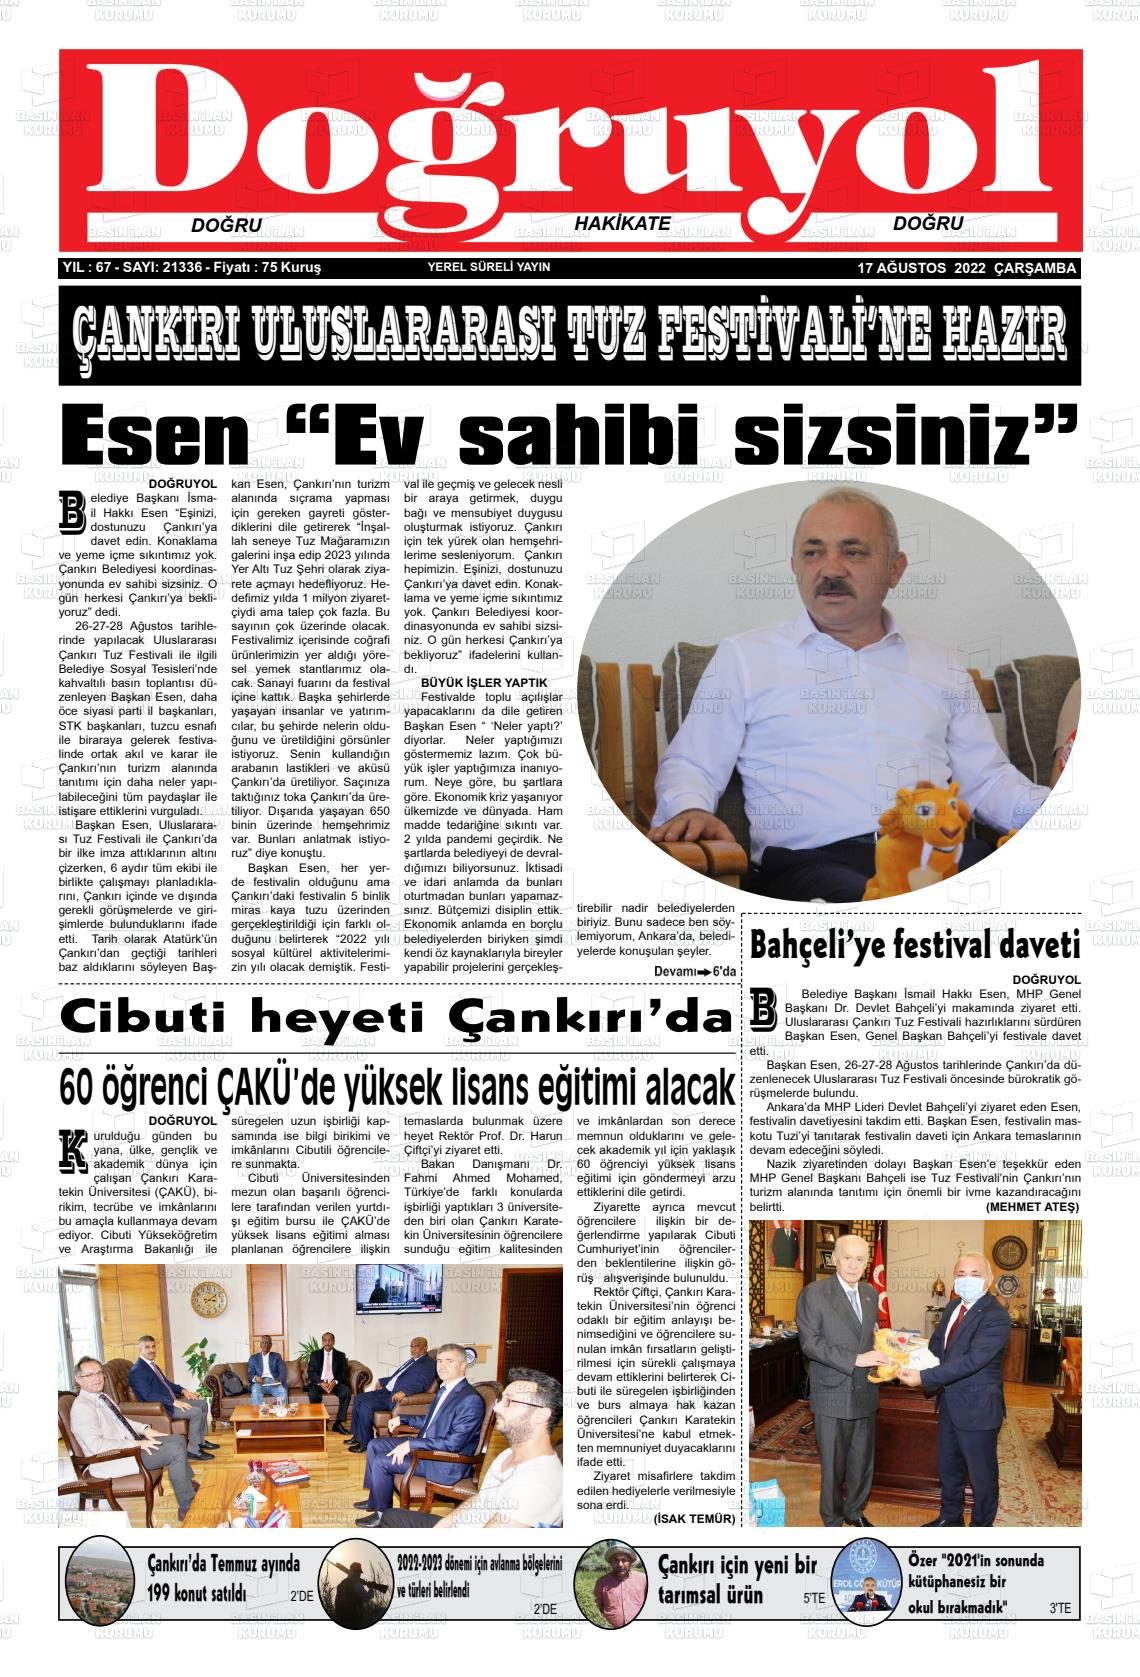 17 Ağustos 2022 Doğruyol Gazete Manşeti